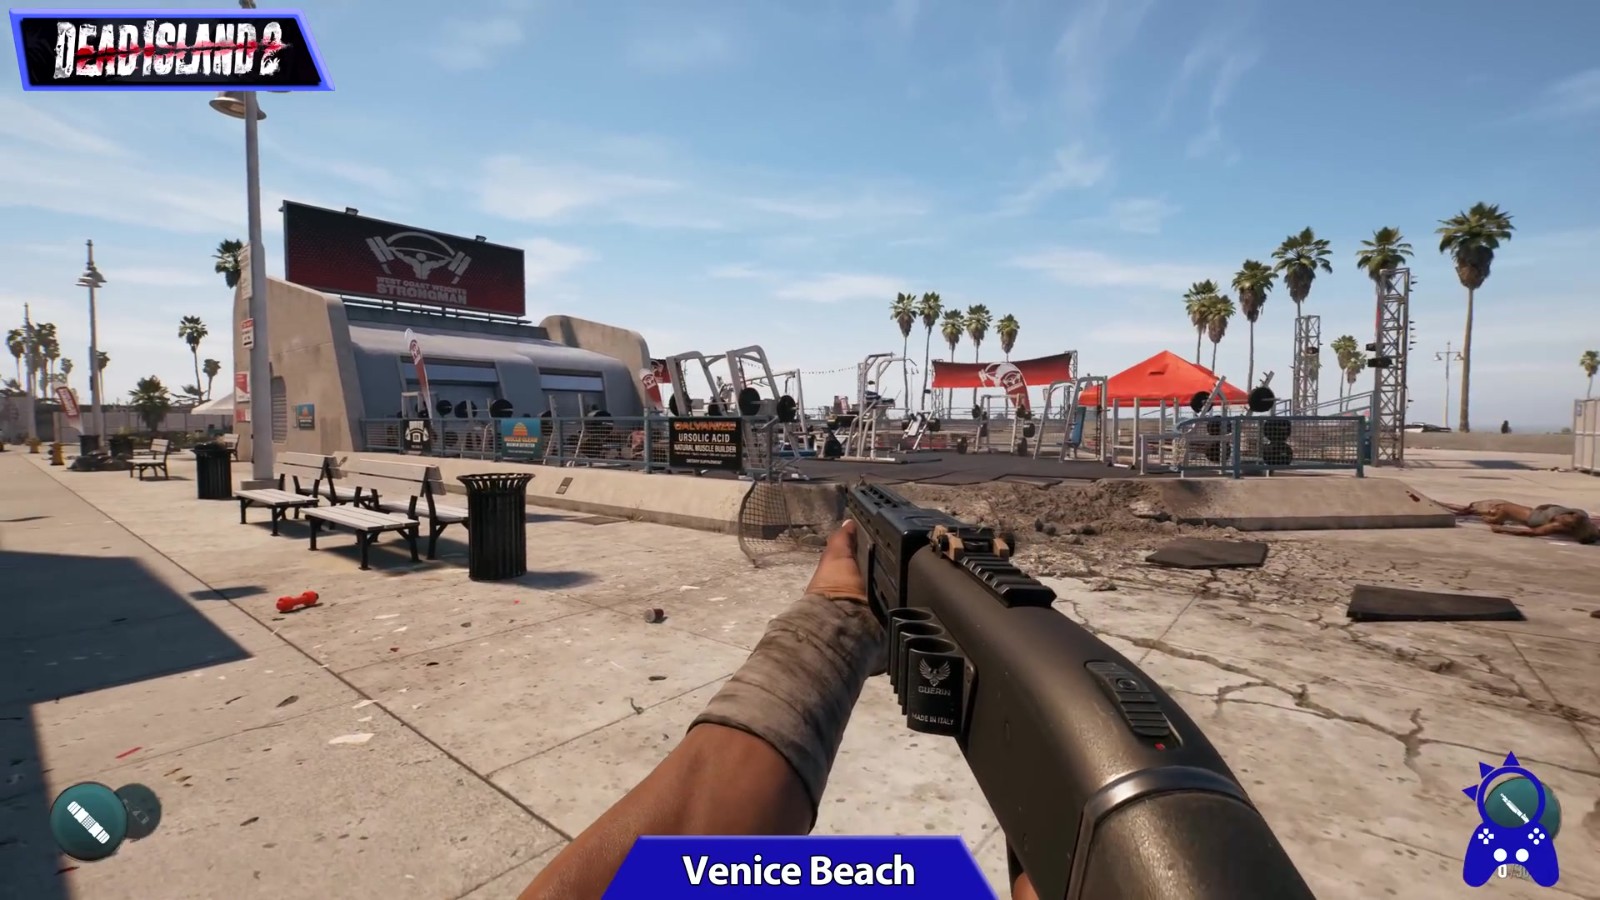 《死亡岛2》游戏环境与现实环境视频对比